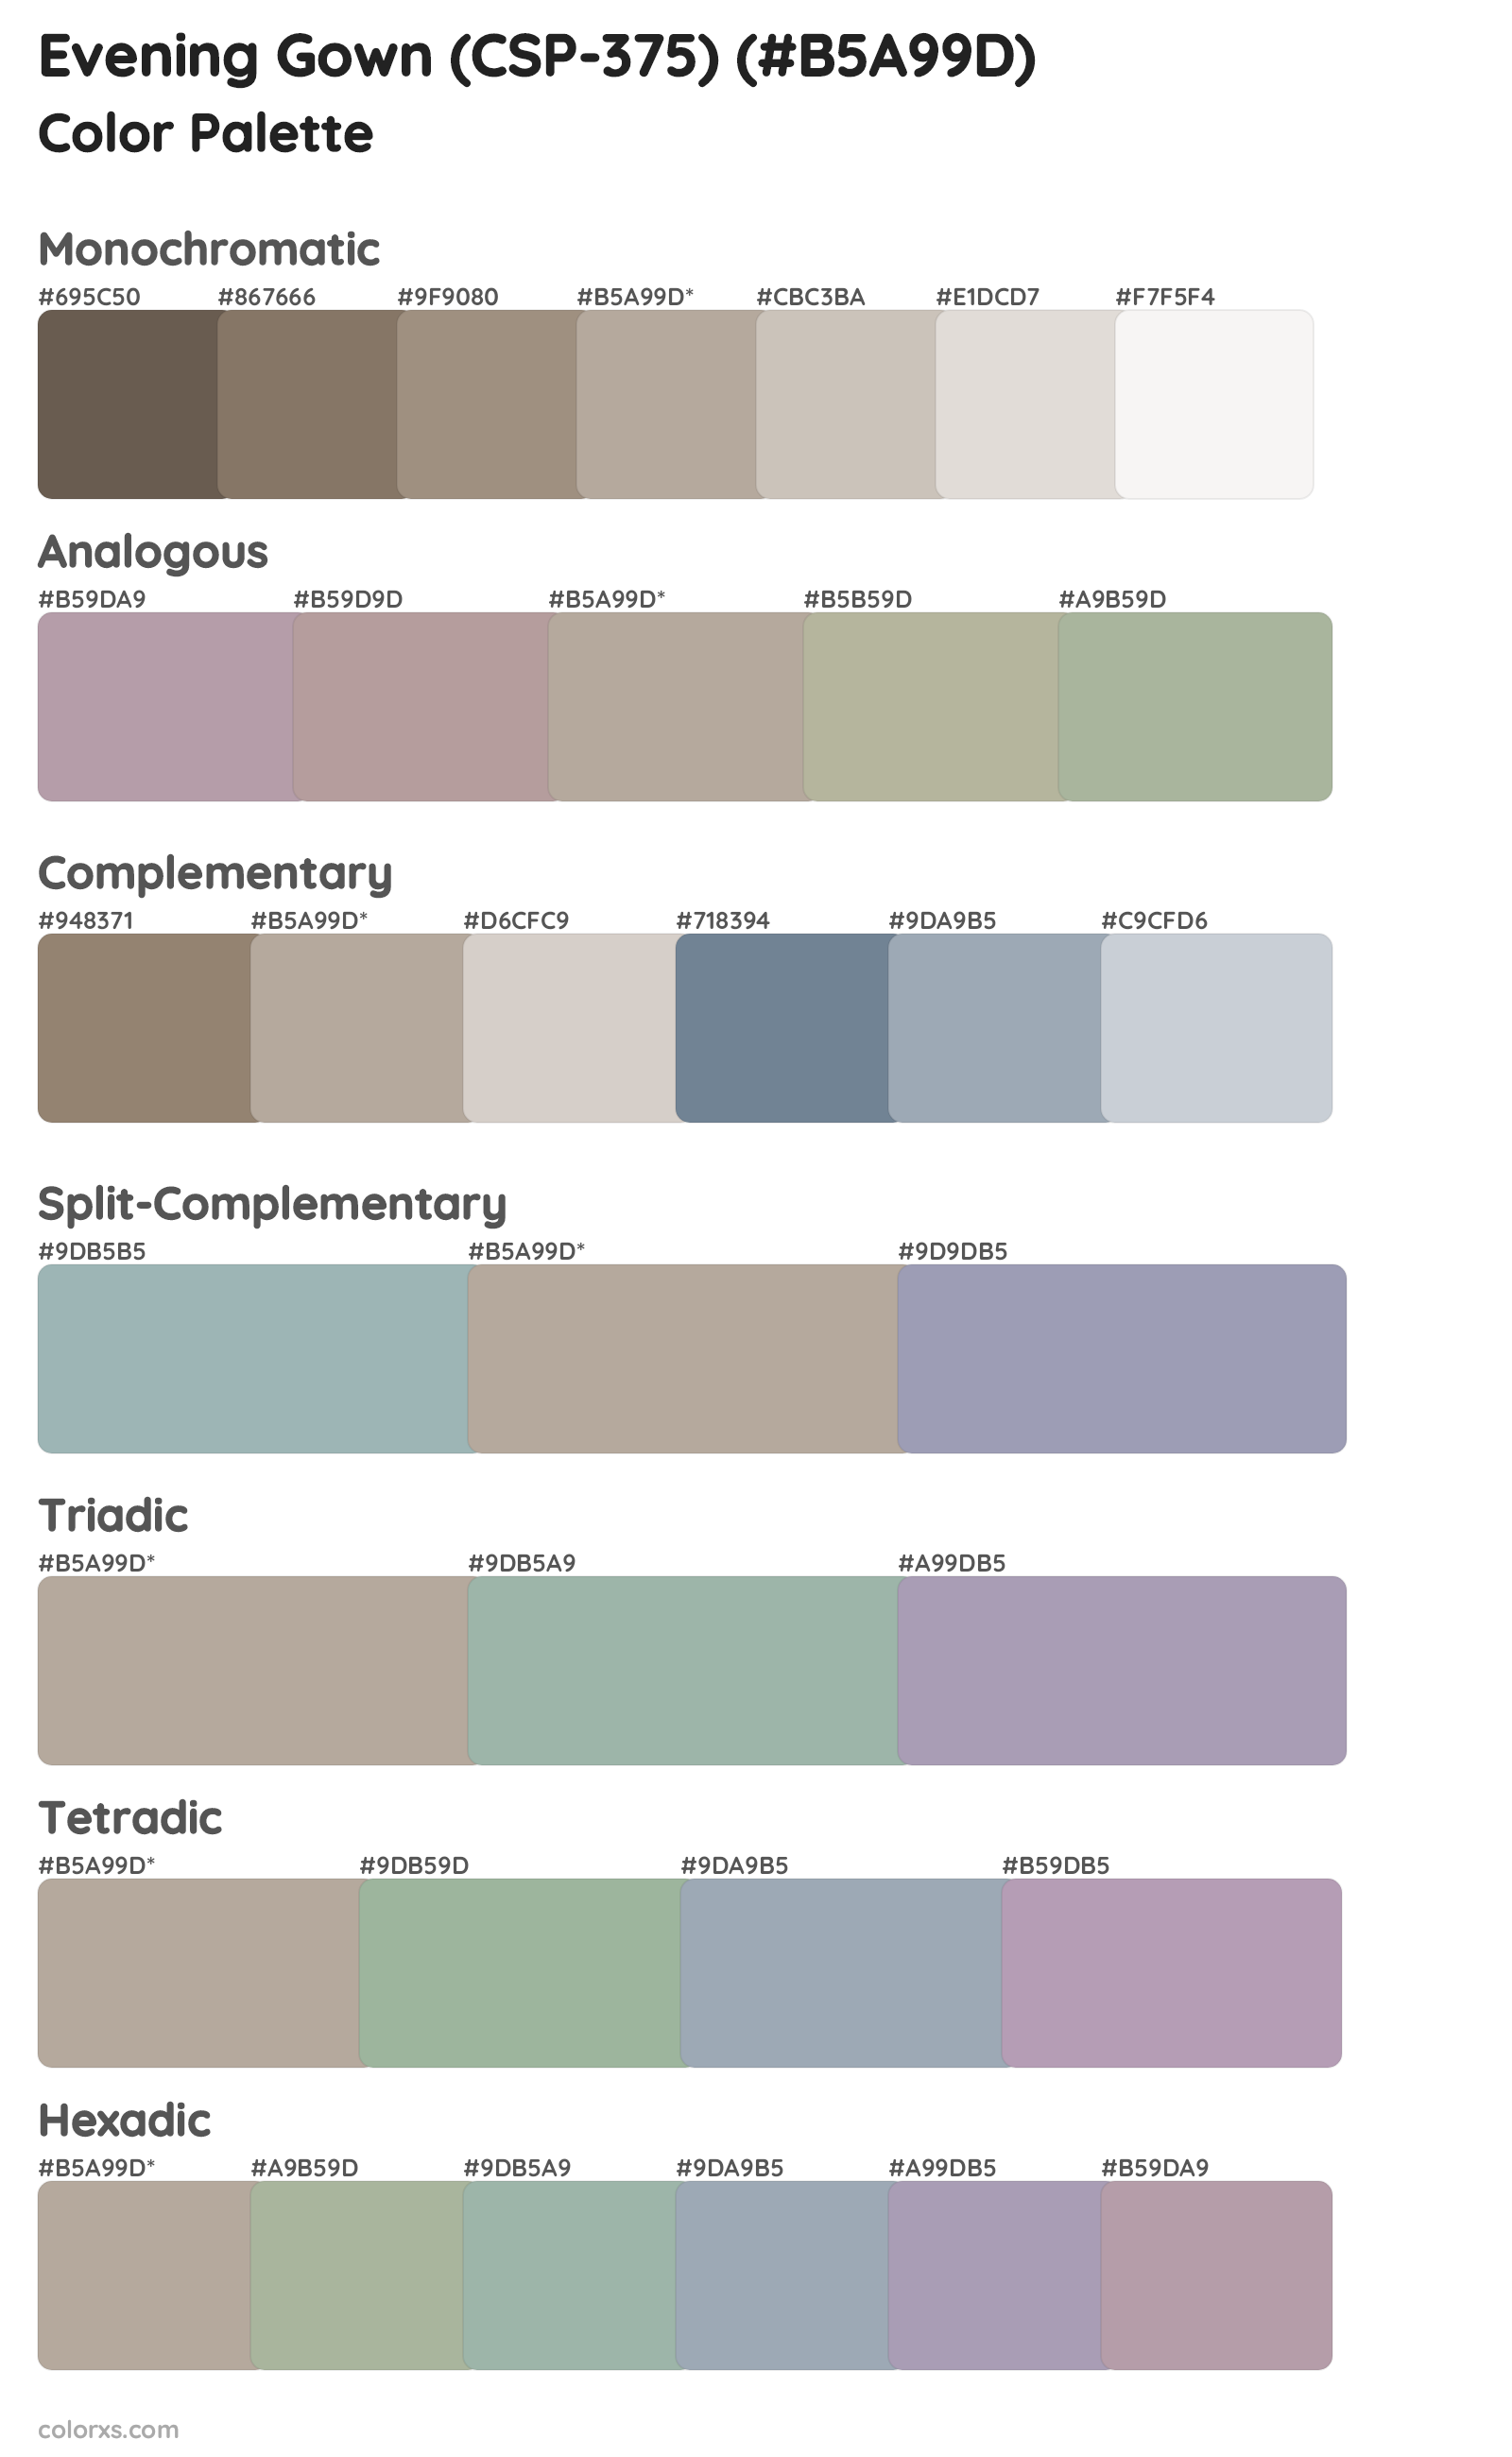 Evening Gown (CSP-375) Color Scheme Palettes